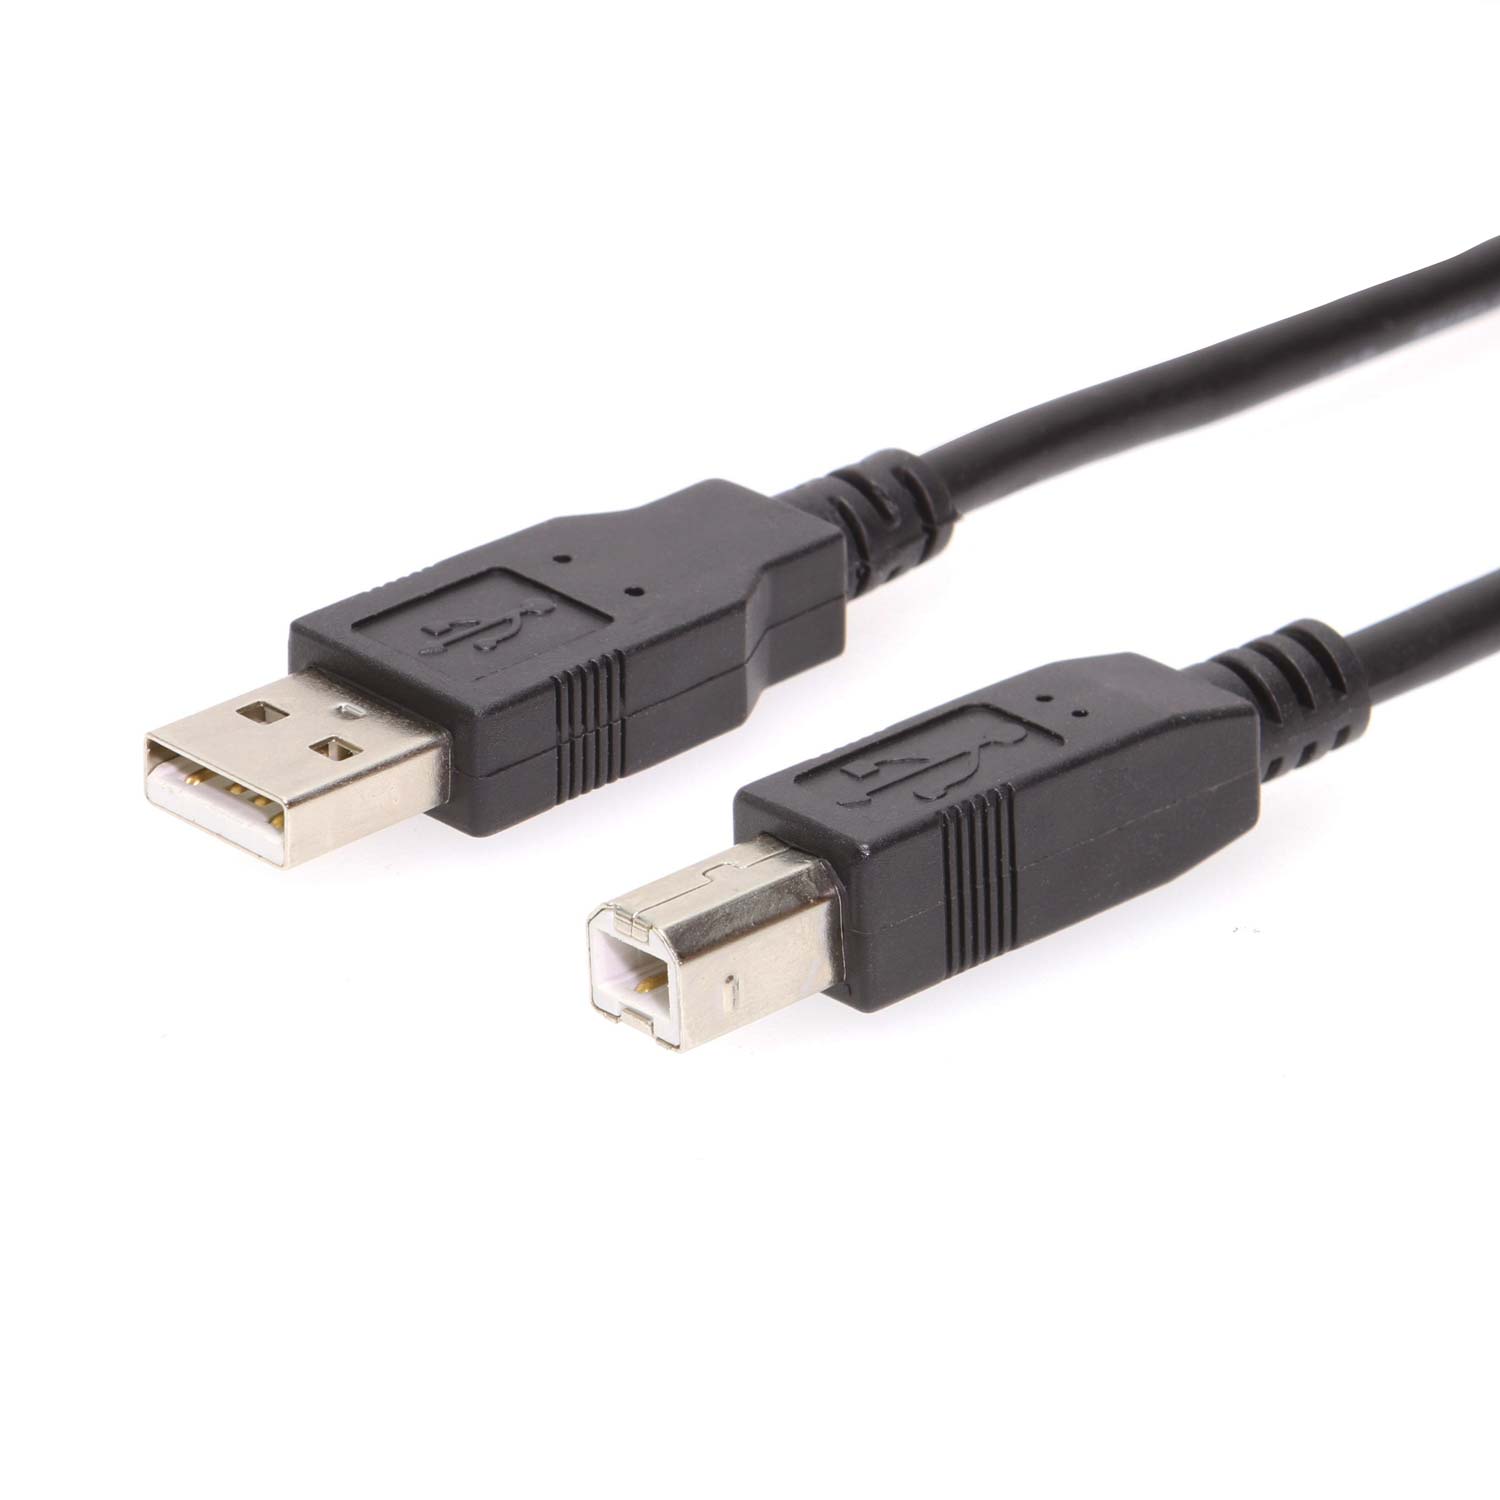 Adaptador USB tipo C Cable OTG USB C 3.0 2.0 Guatemala